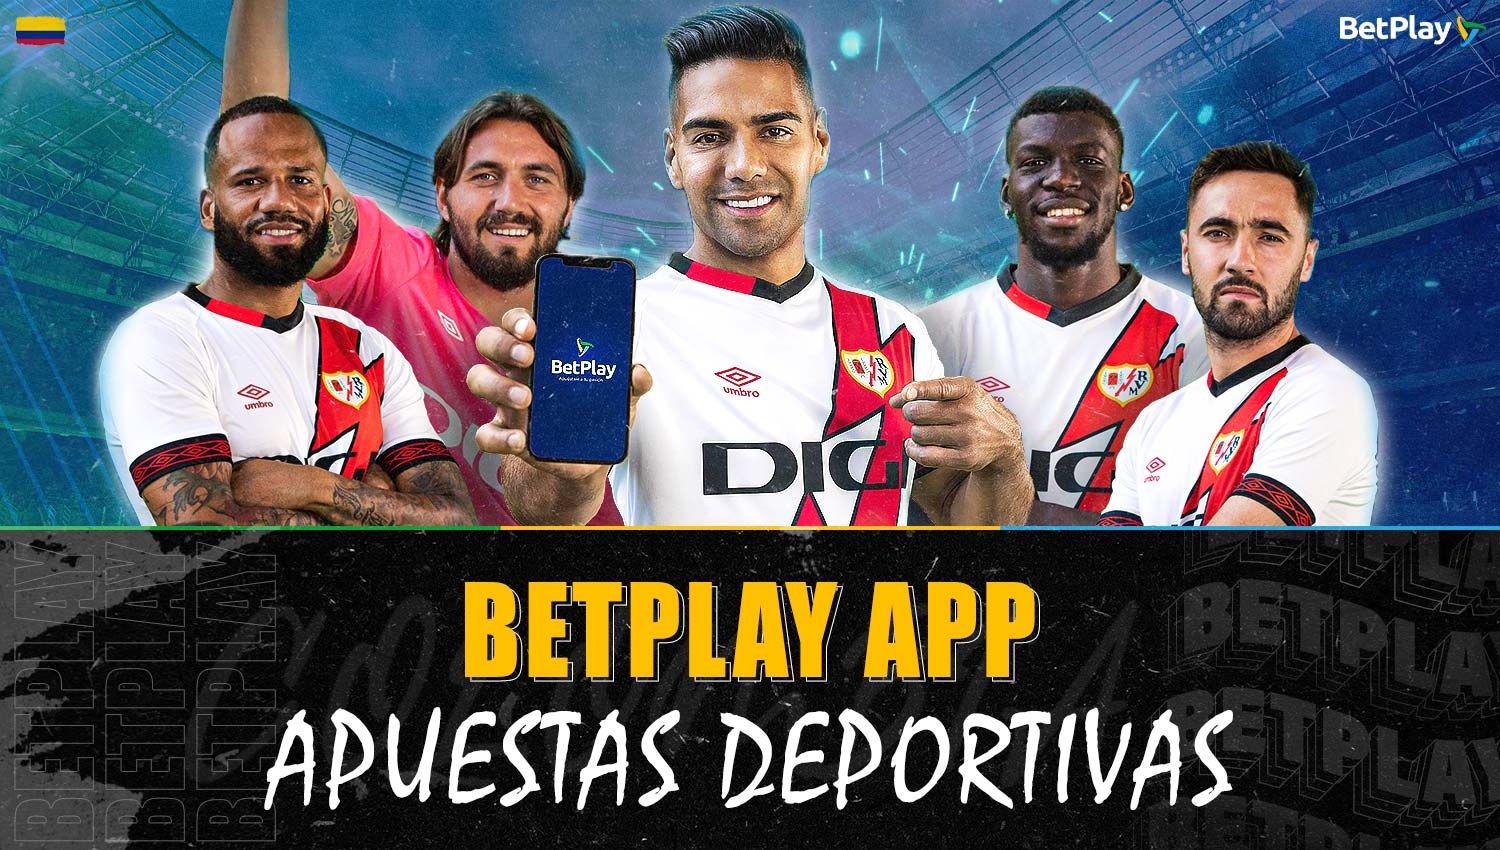 Detalles de las apuestas deportivas en la app móvil de Betplay Colombia